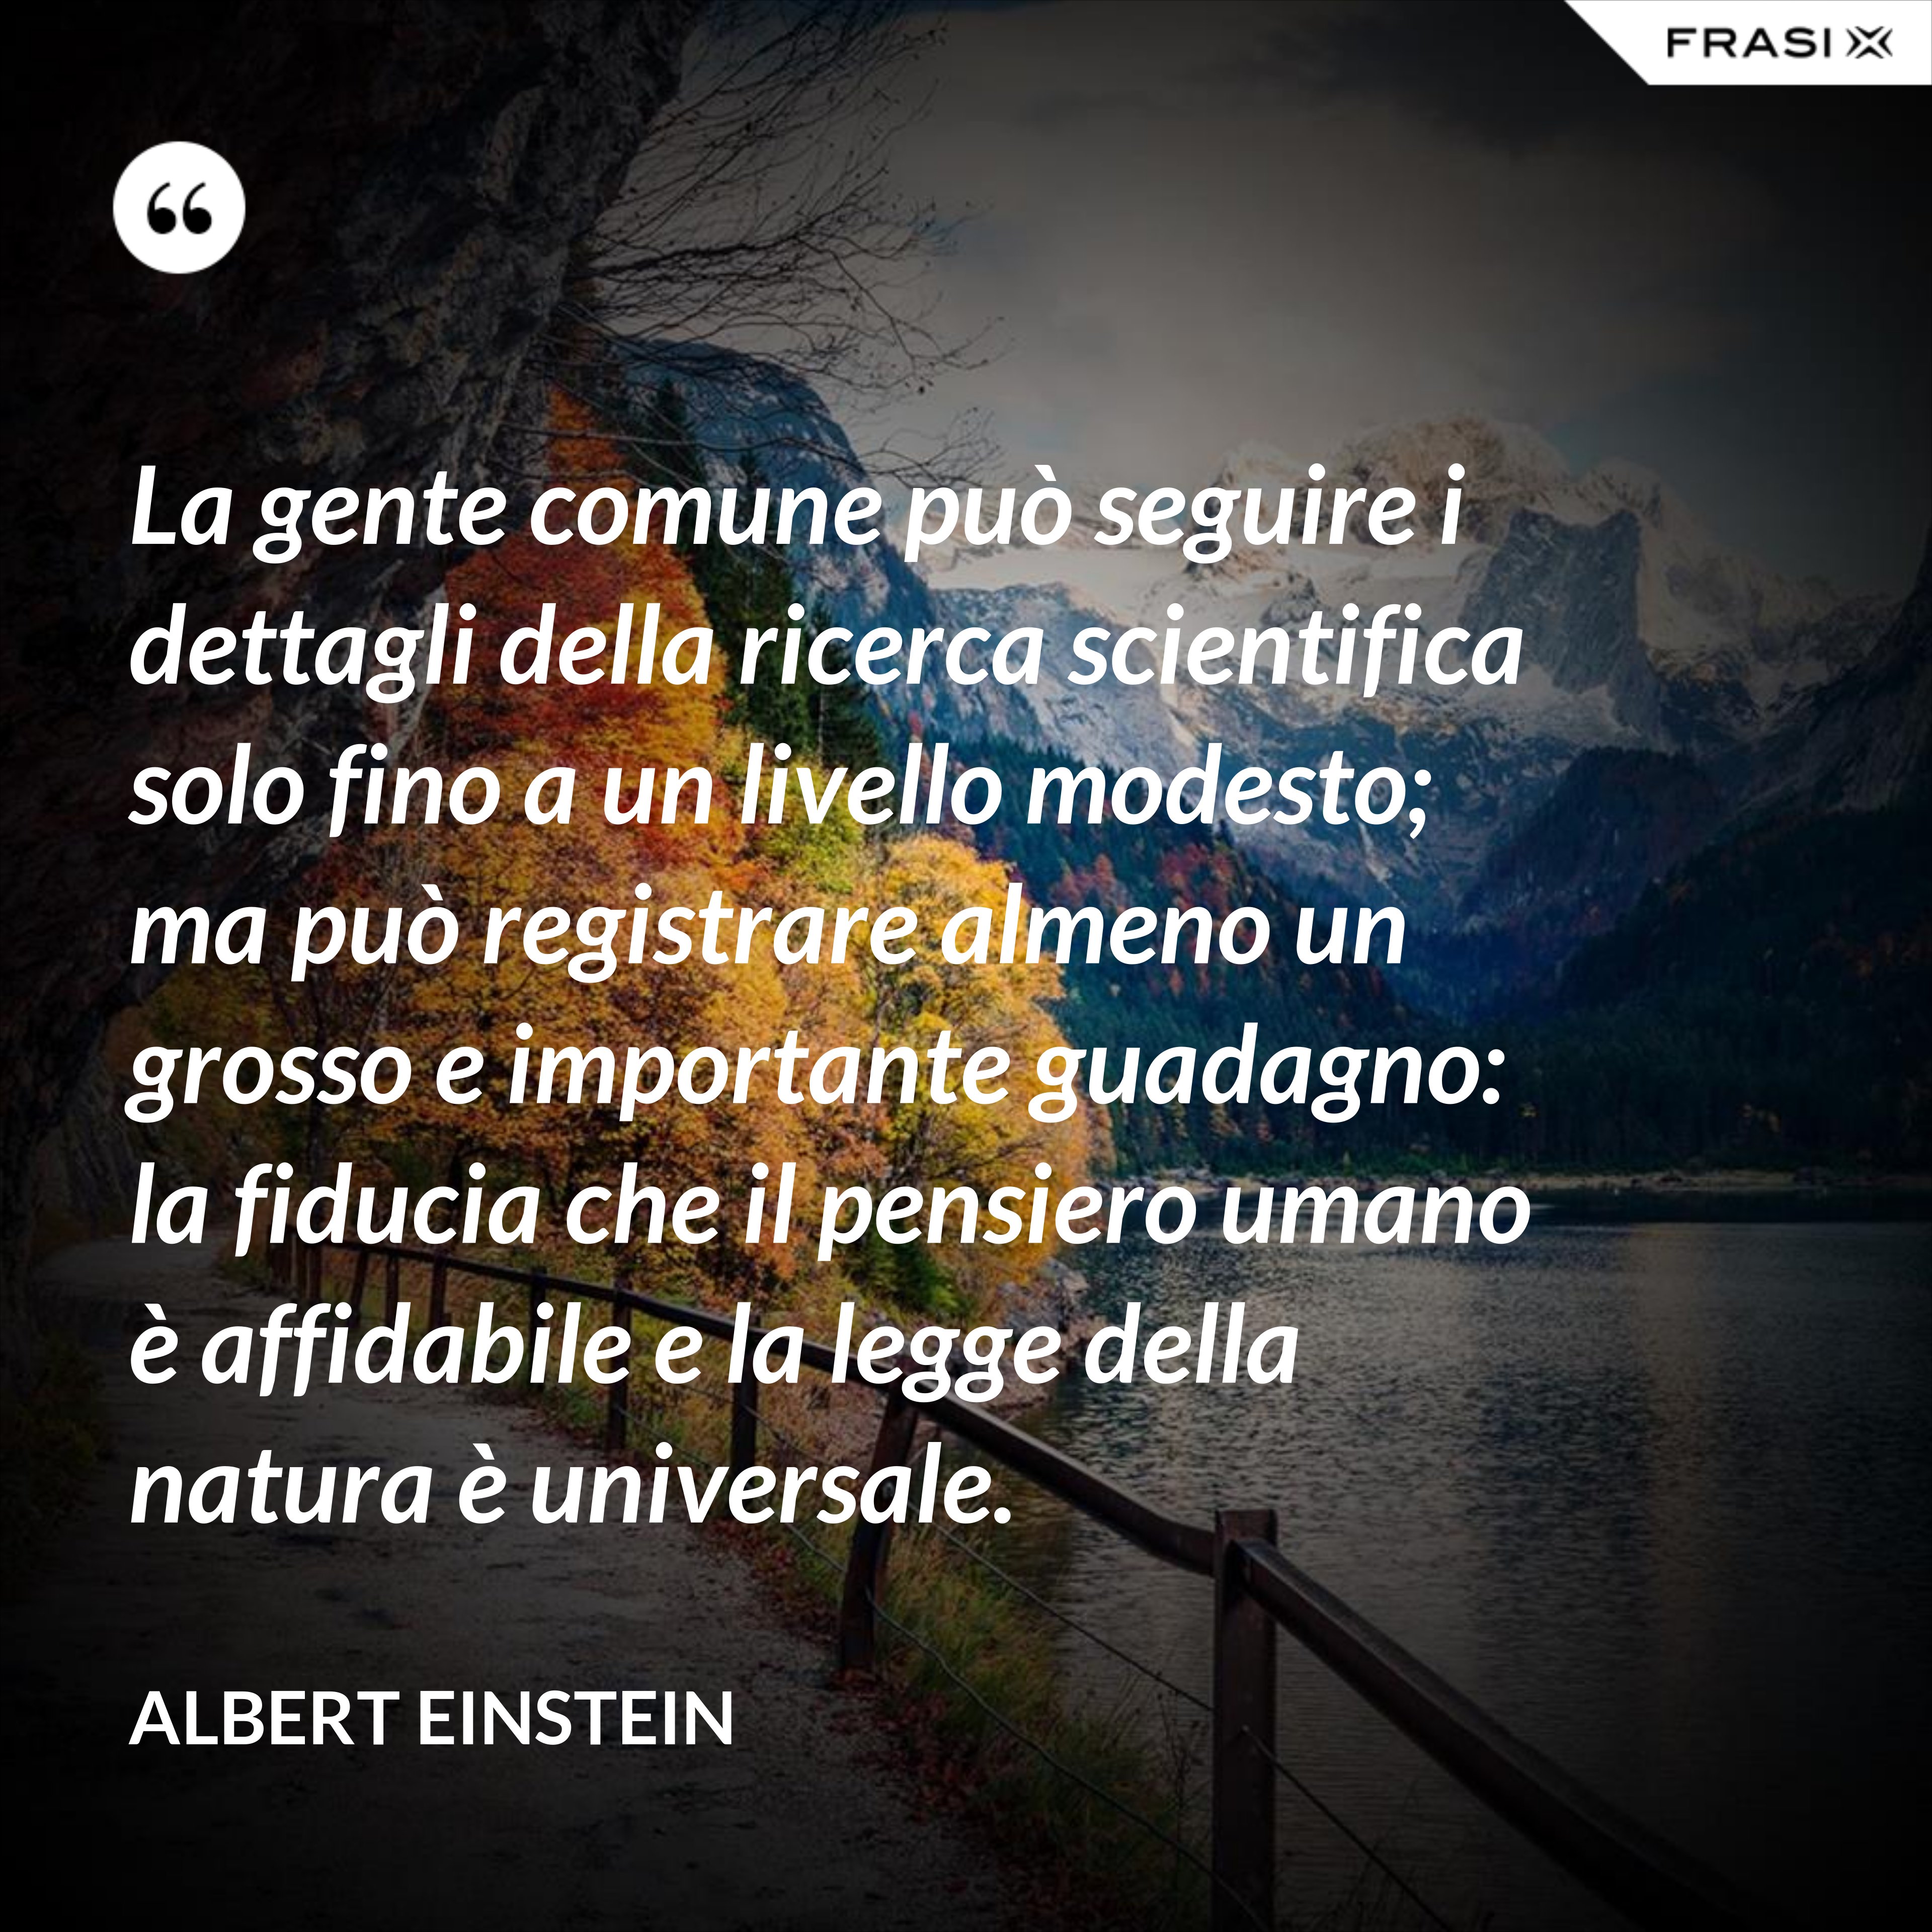 La gente comune può seguire i dettagli della ricerca scientifica solo fino a un livello modesto; ma può registrare almeno un grosso e importante guadagno: la fiducia che il pensiero umano è affidabile e la legge della natura è universale. - Albert Einstein